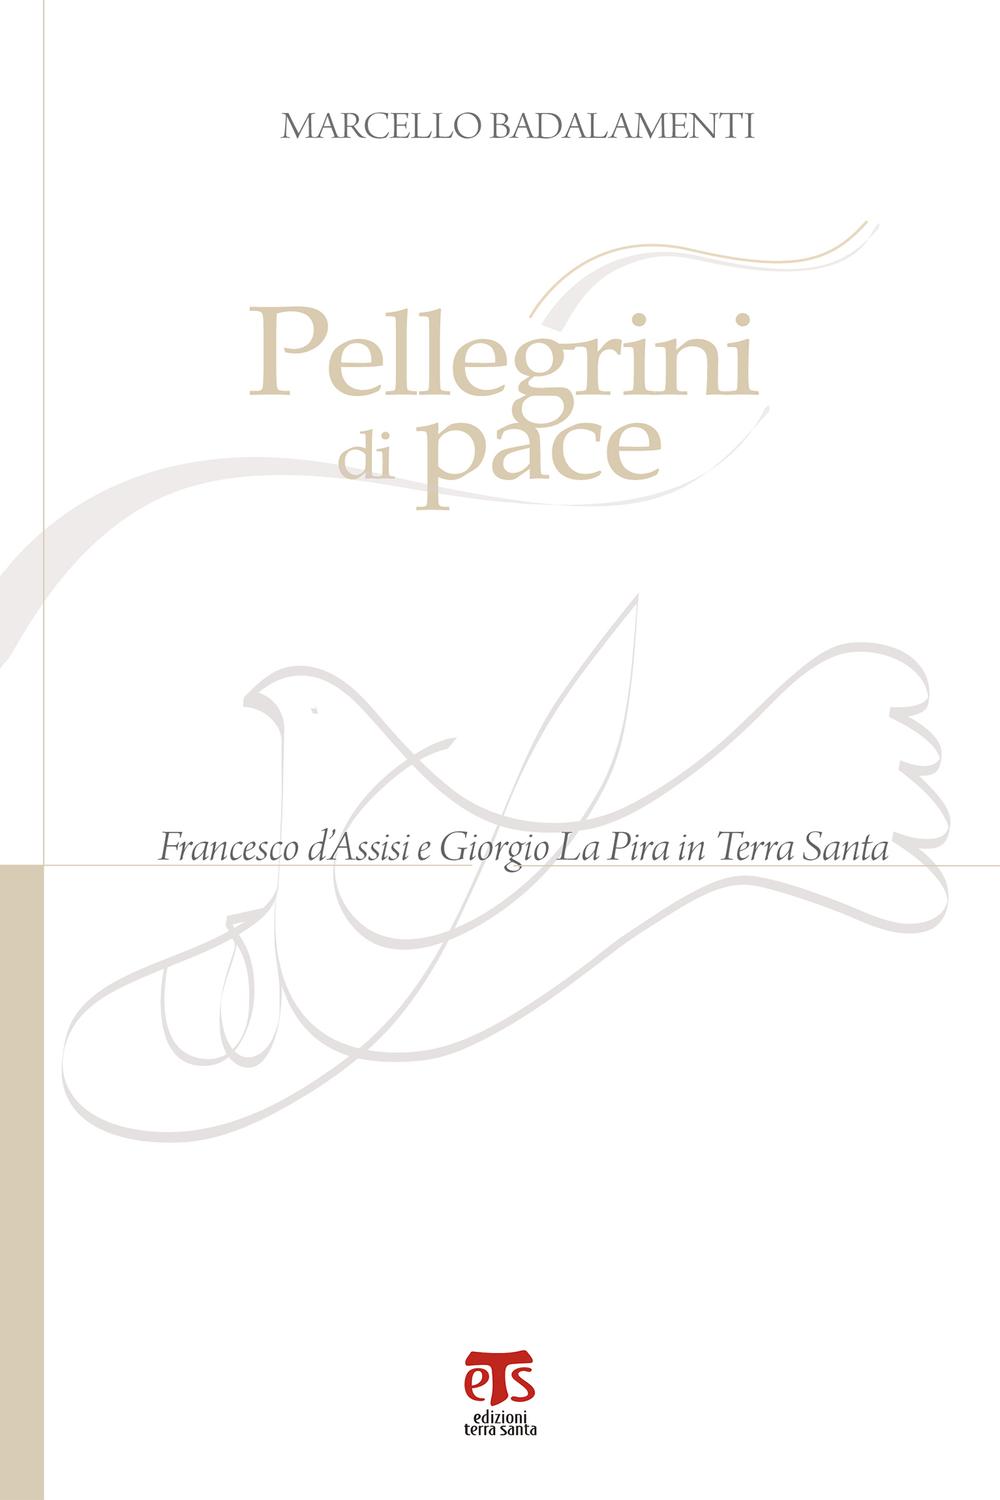 Pellegrini di pace - Marcello Badalamenti